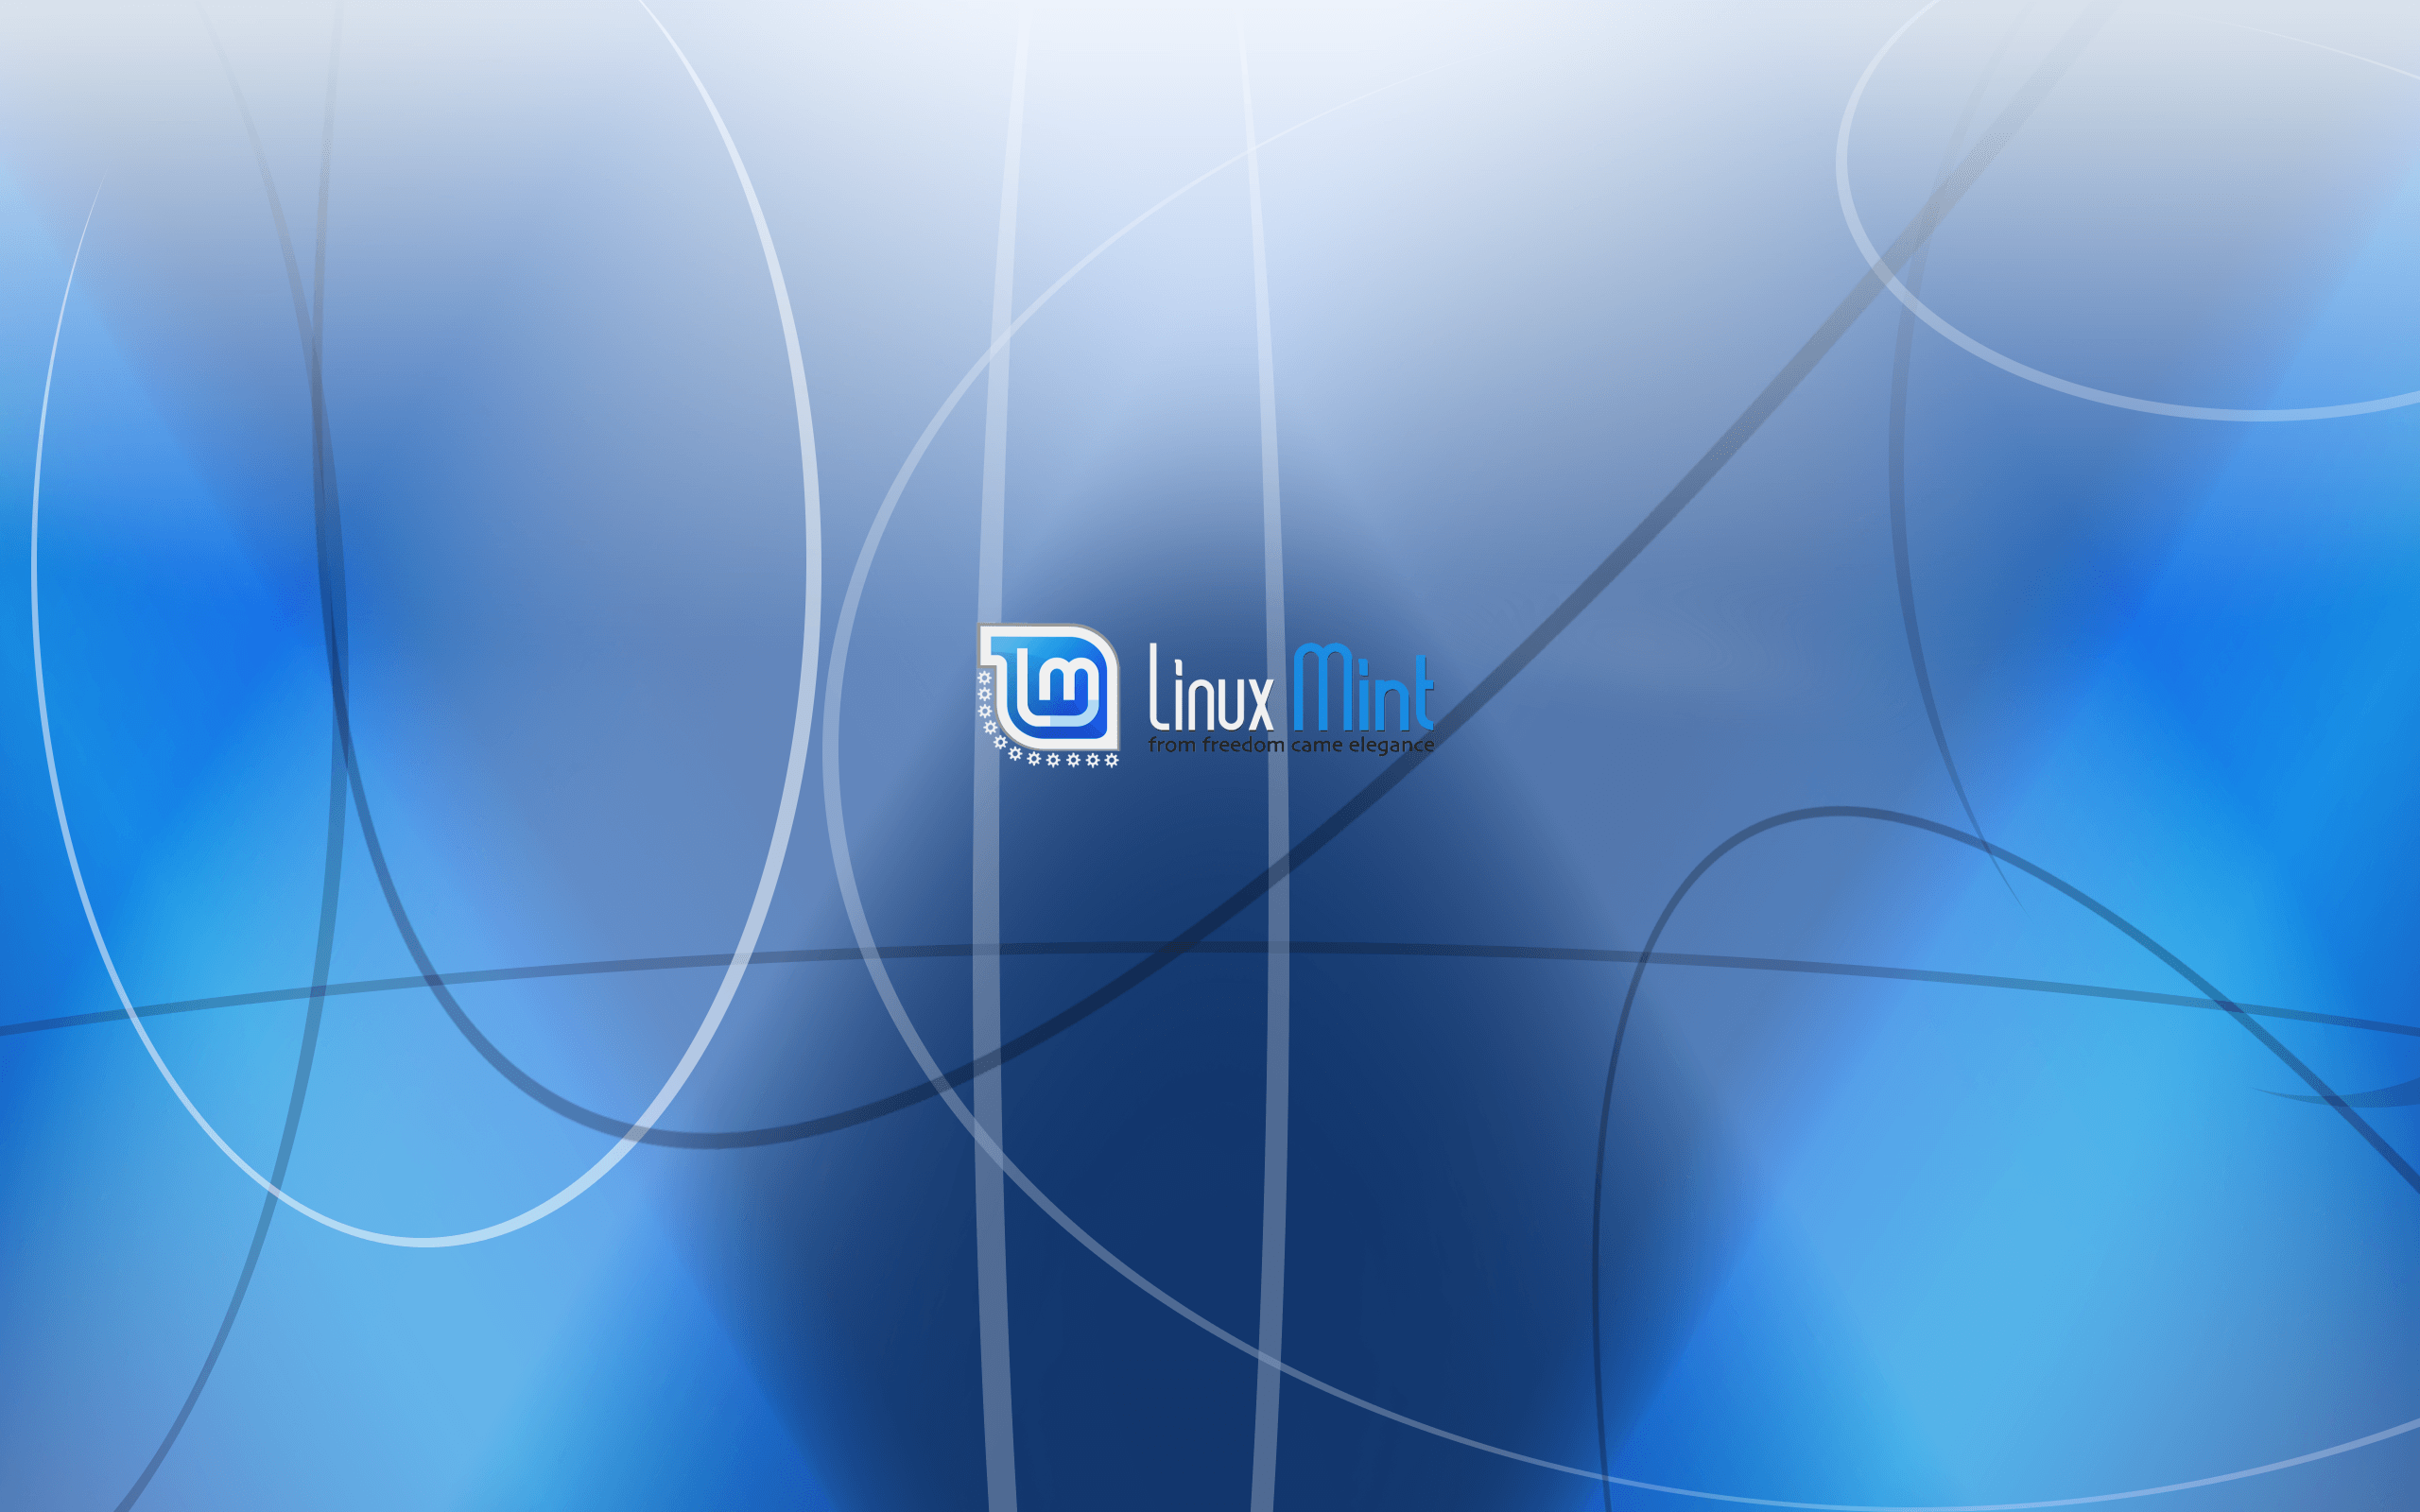 Nuevo fondo de pantalla - Mint Fresca! - Foros de Linux Mint